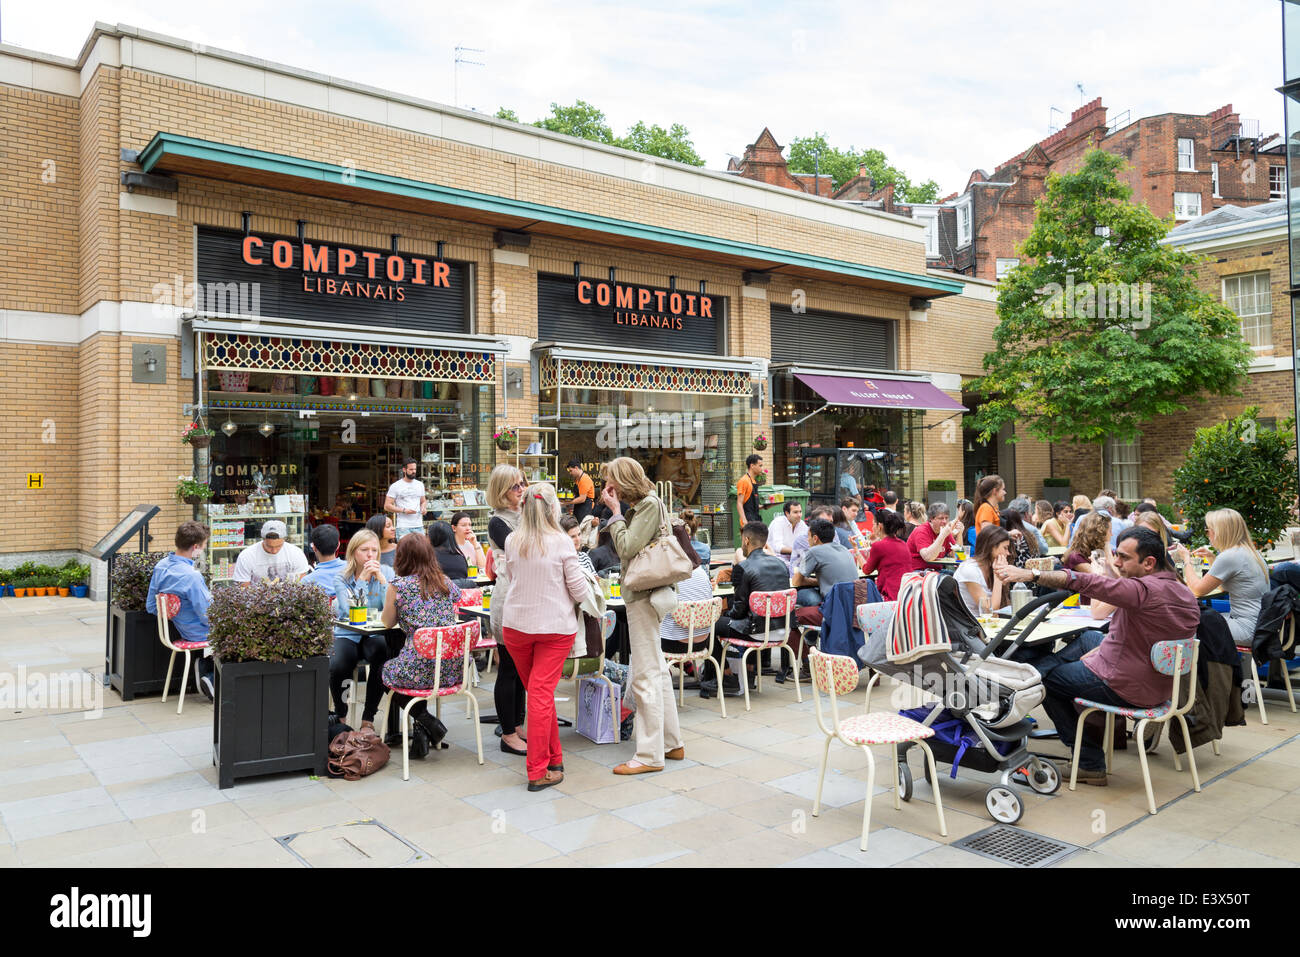 People eating outside at Lebanese restaurant, Comptoir Libanais in Duke Of York Square, Chelsea, London, England, UK Stock Photo